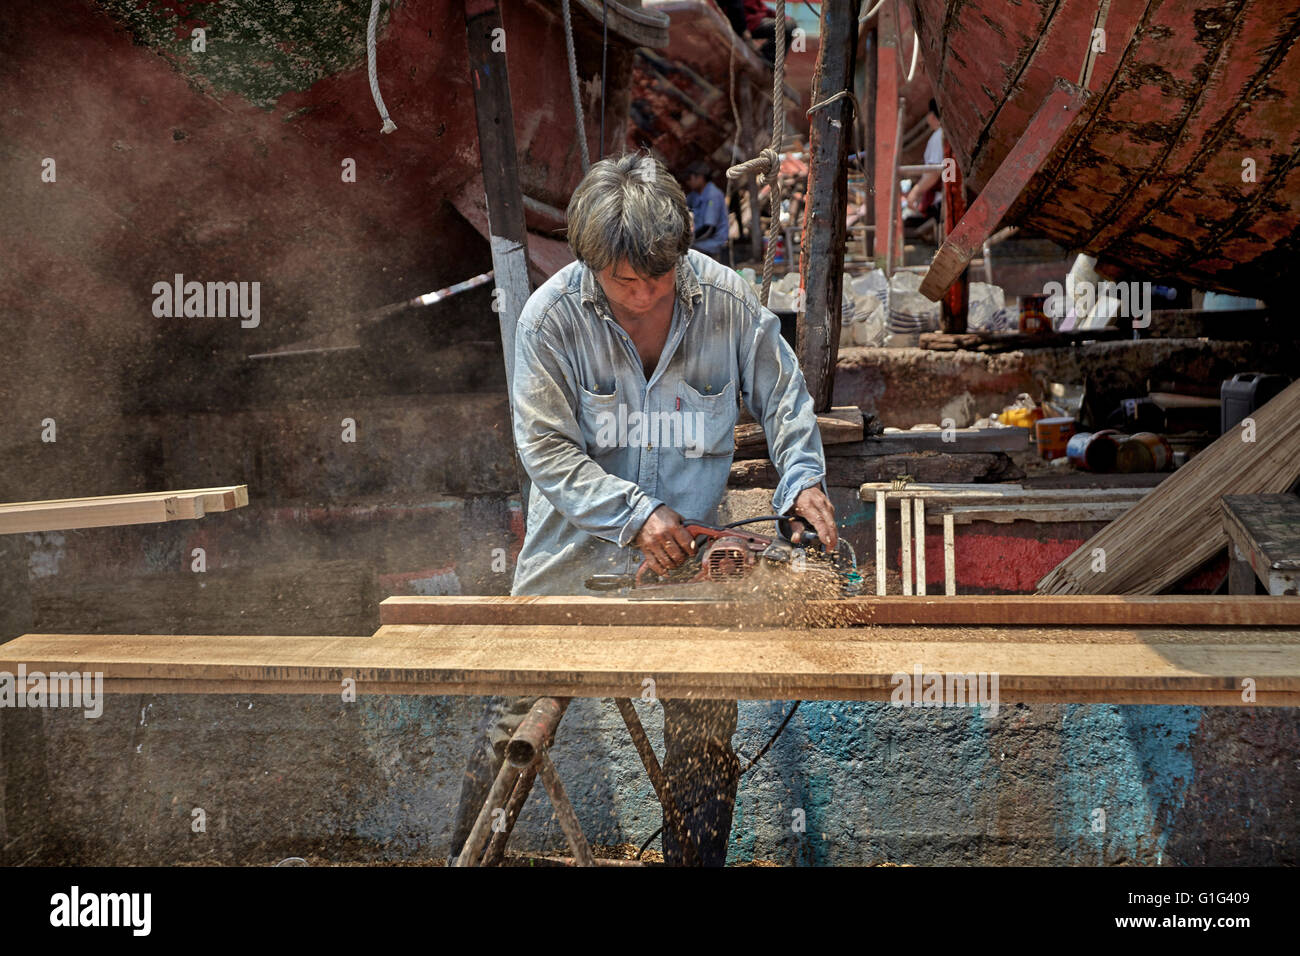 Carpintero trabaja con madera usando una herramienta eléctrica. Foto de stock